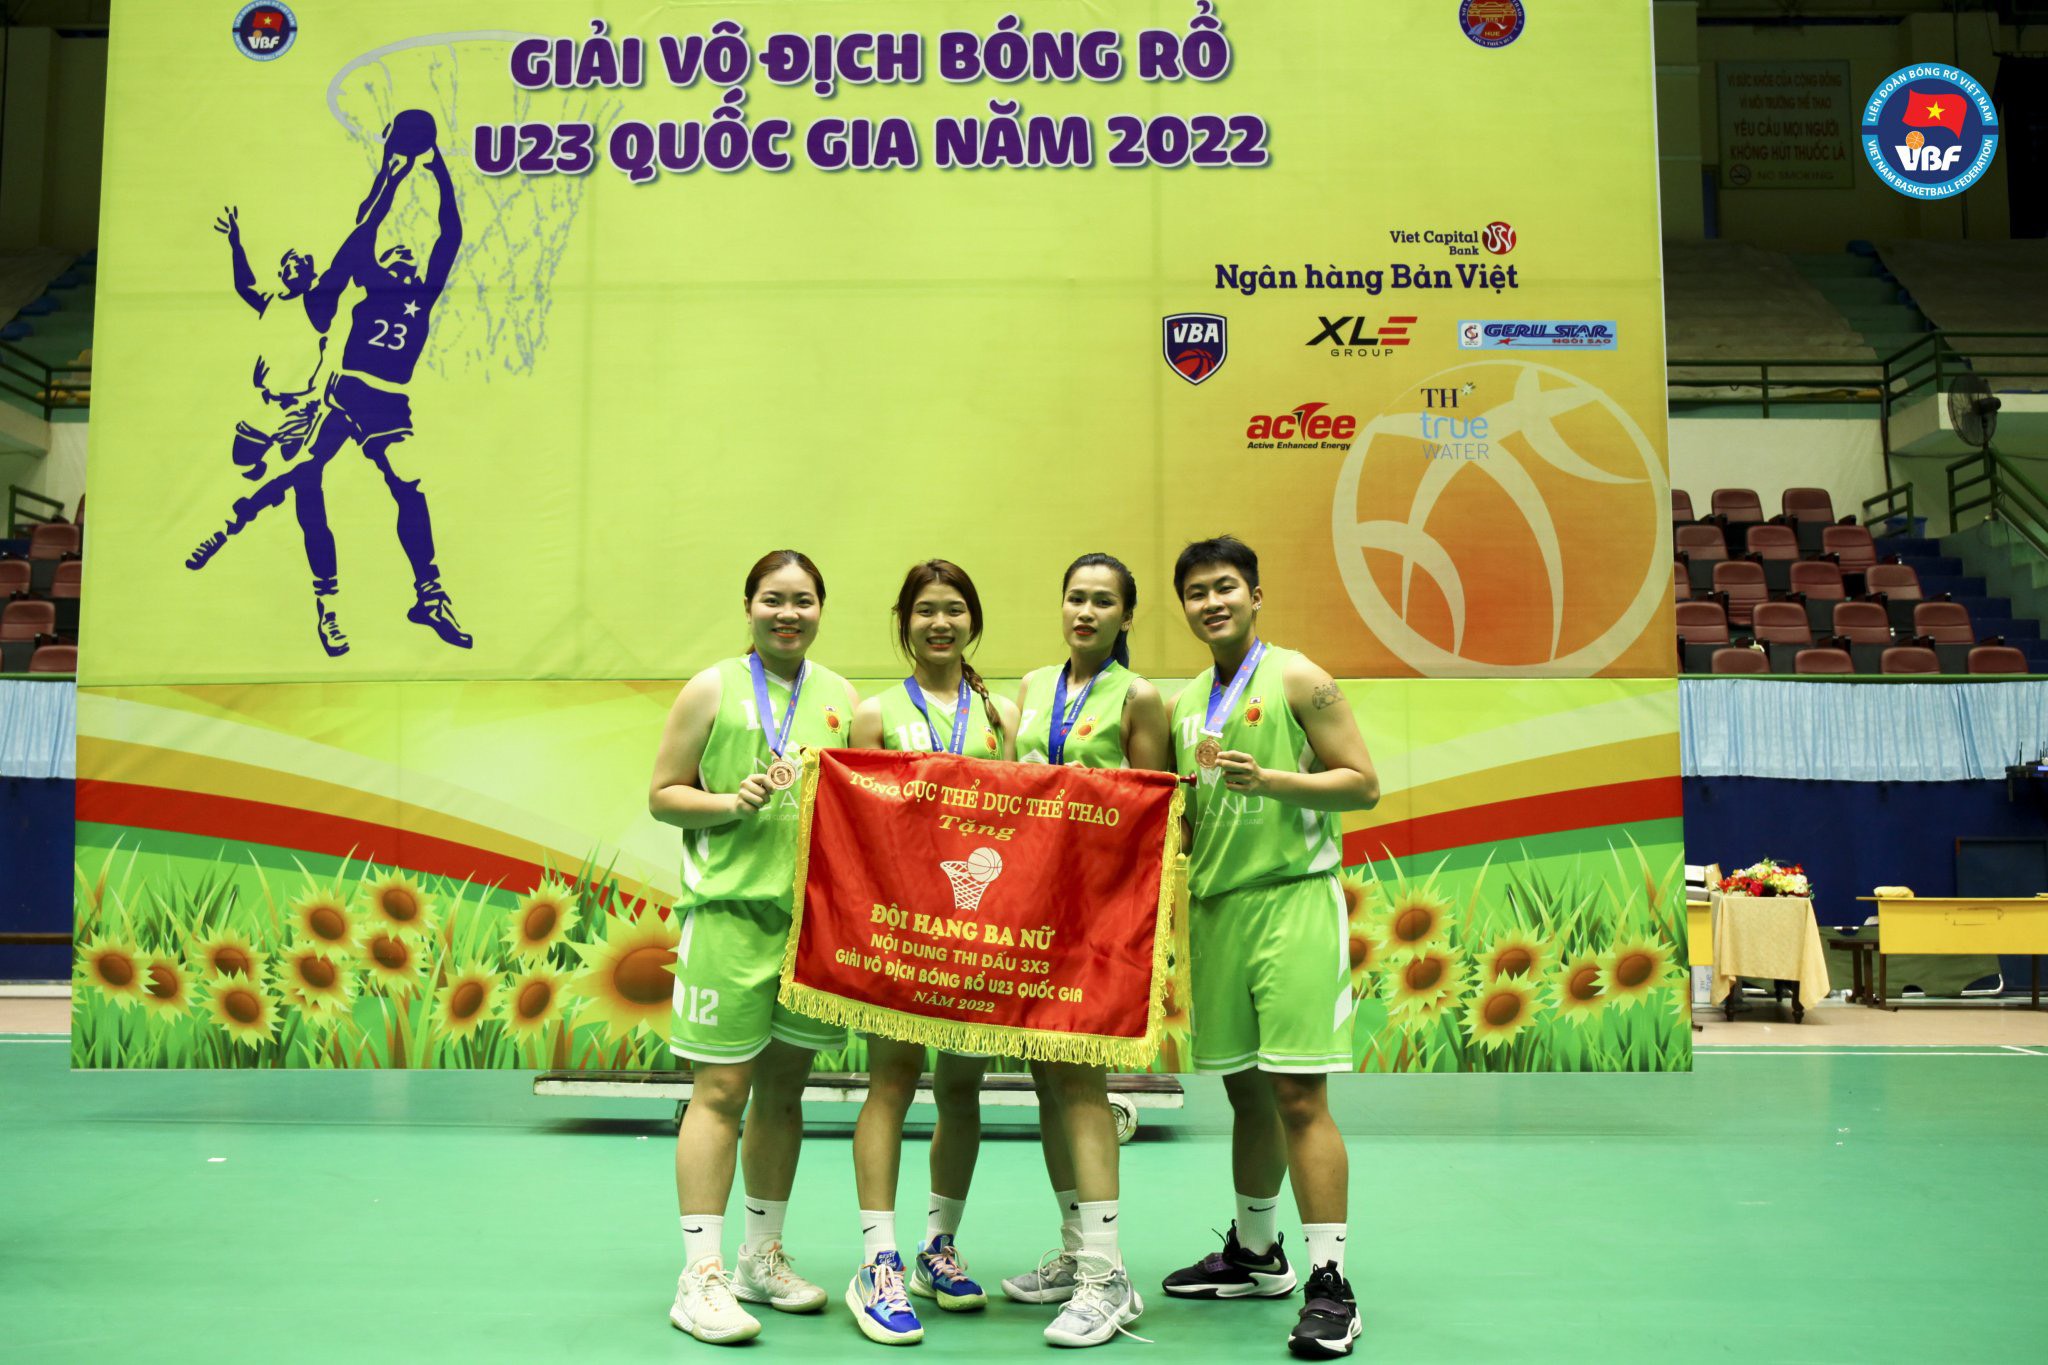 Hồng Tuyết và đồng đội đoạt huy chương đồng nội dung 3x3 tại giải vô địch bóng rổ U23 quốc gia năm 2022 - Ảnh:VBF